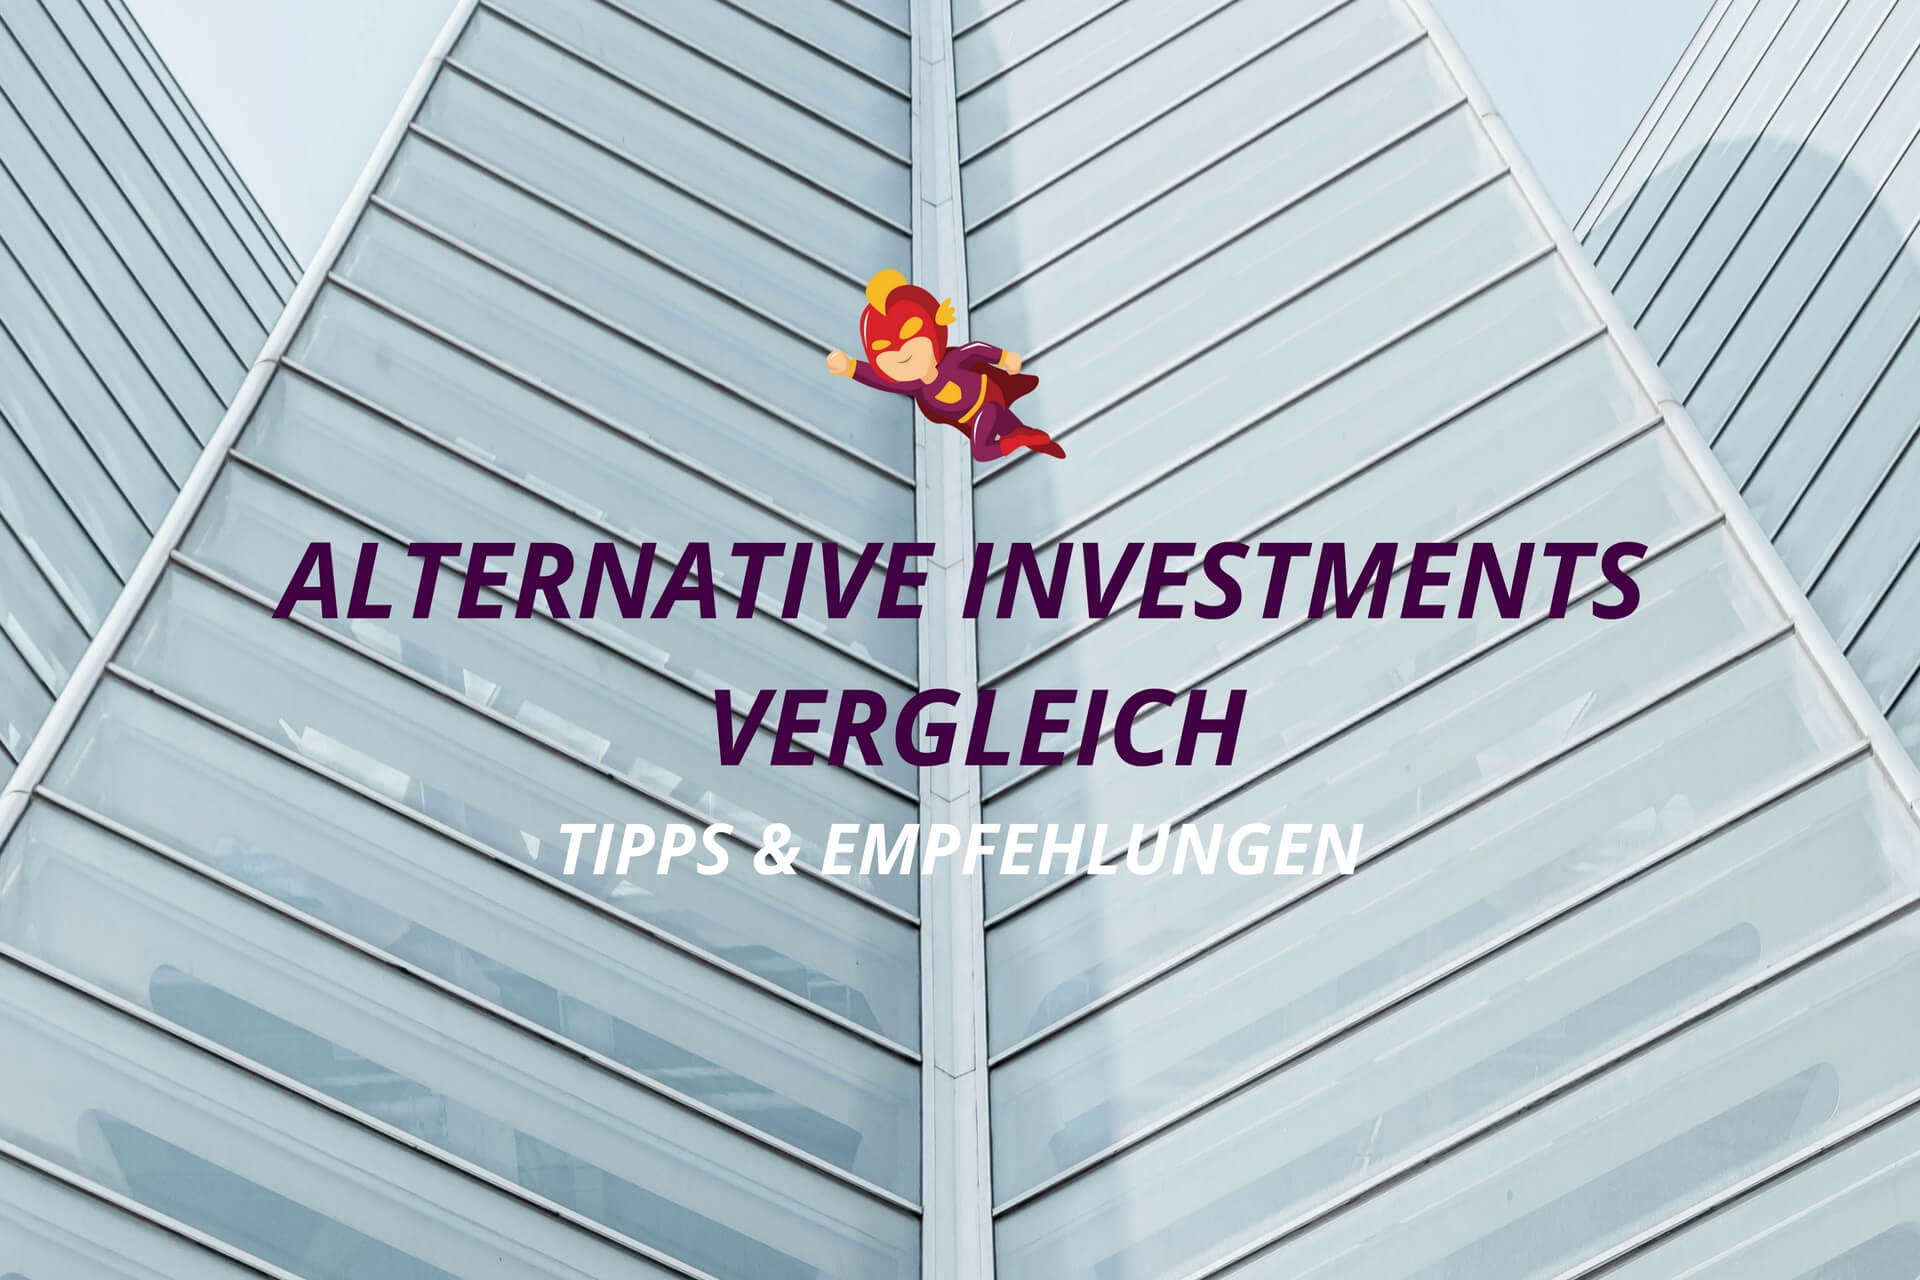 Alternative Investments Vergleich - Finanzhelden.org